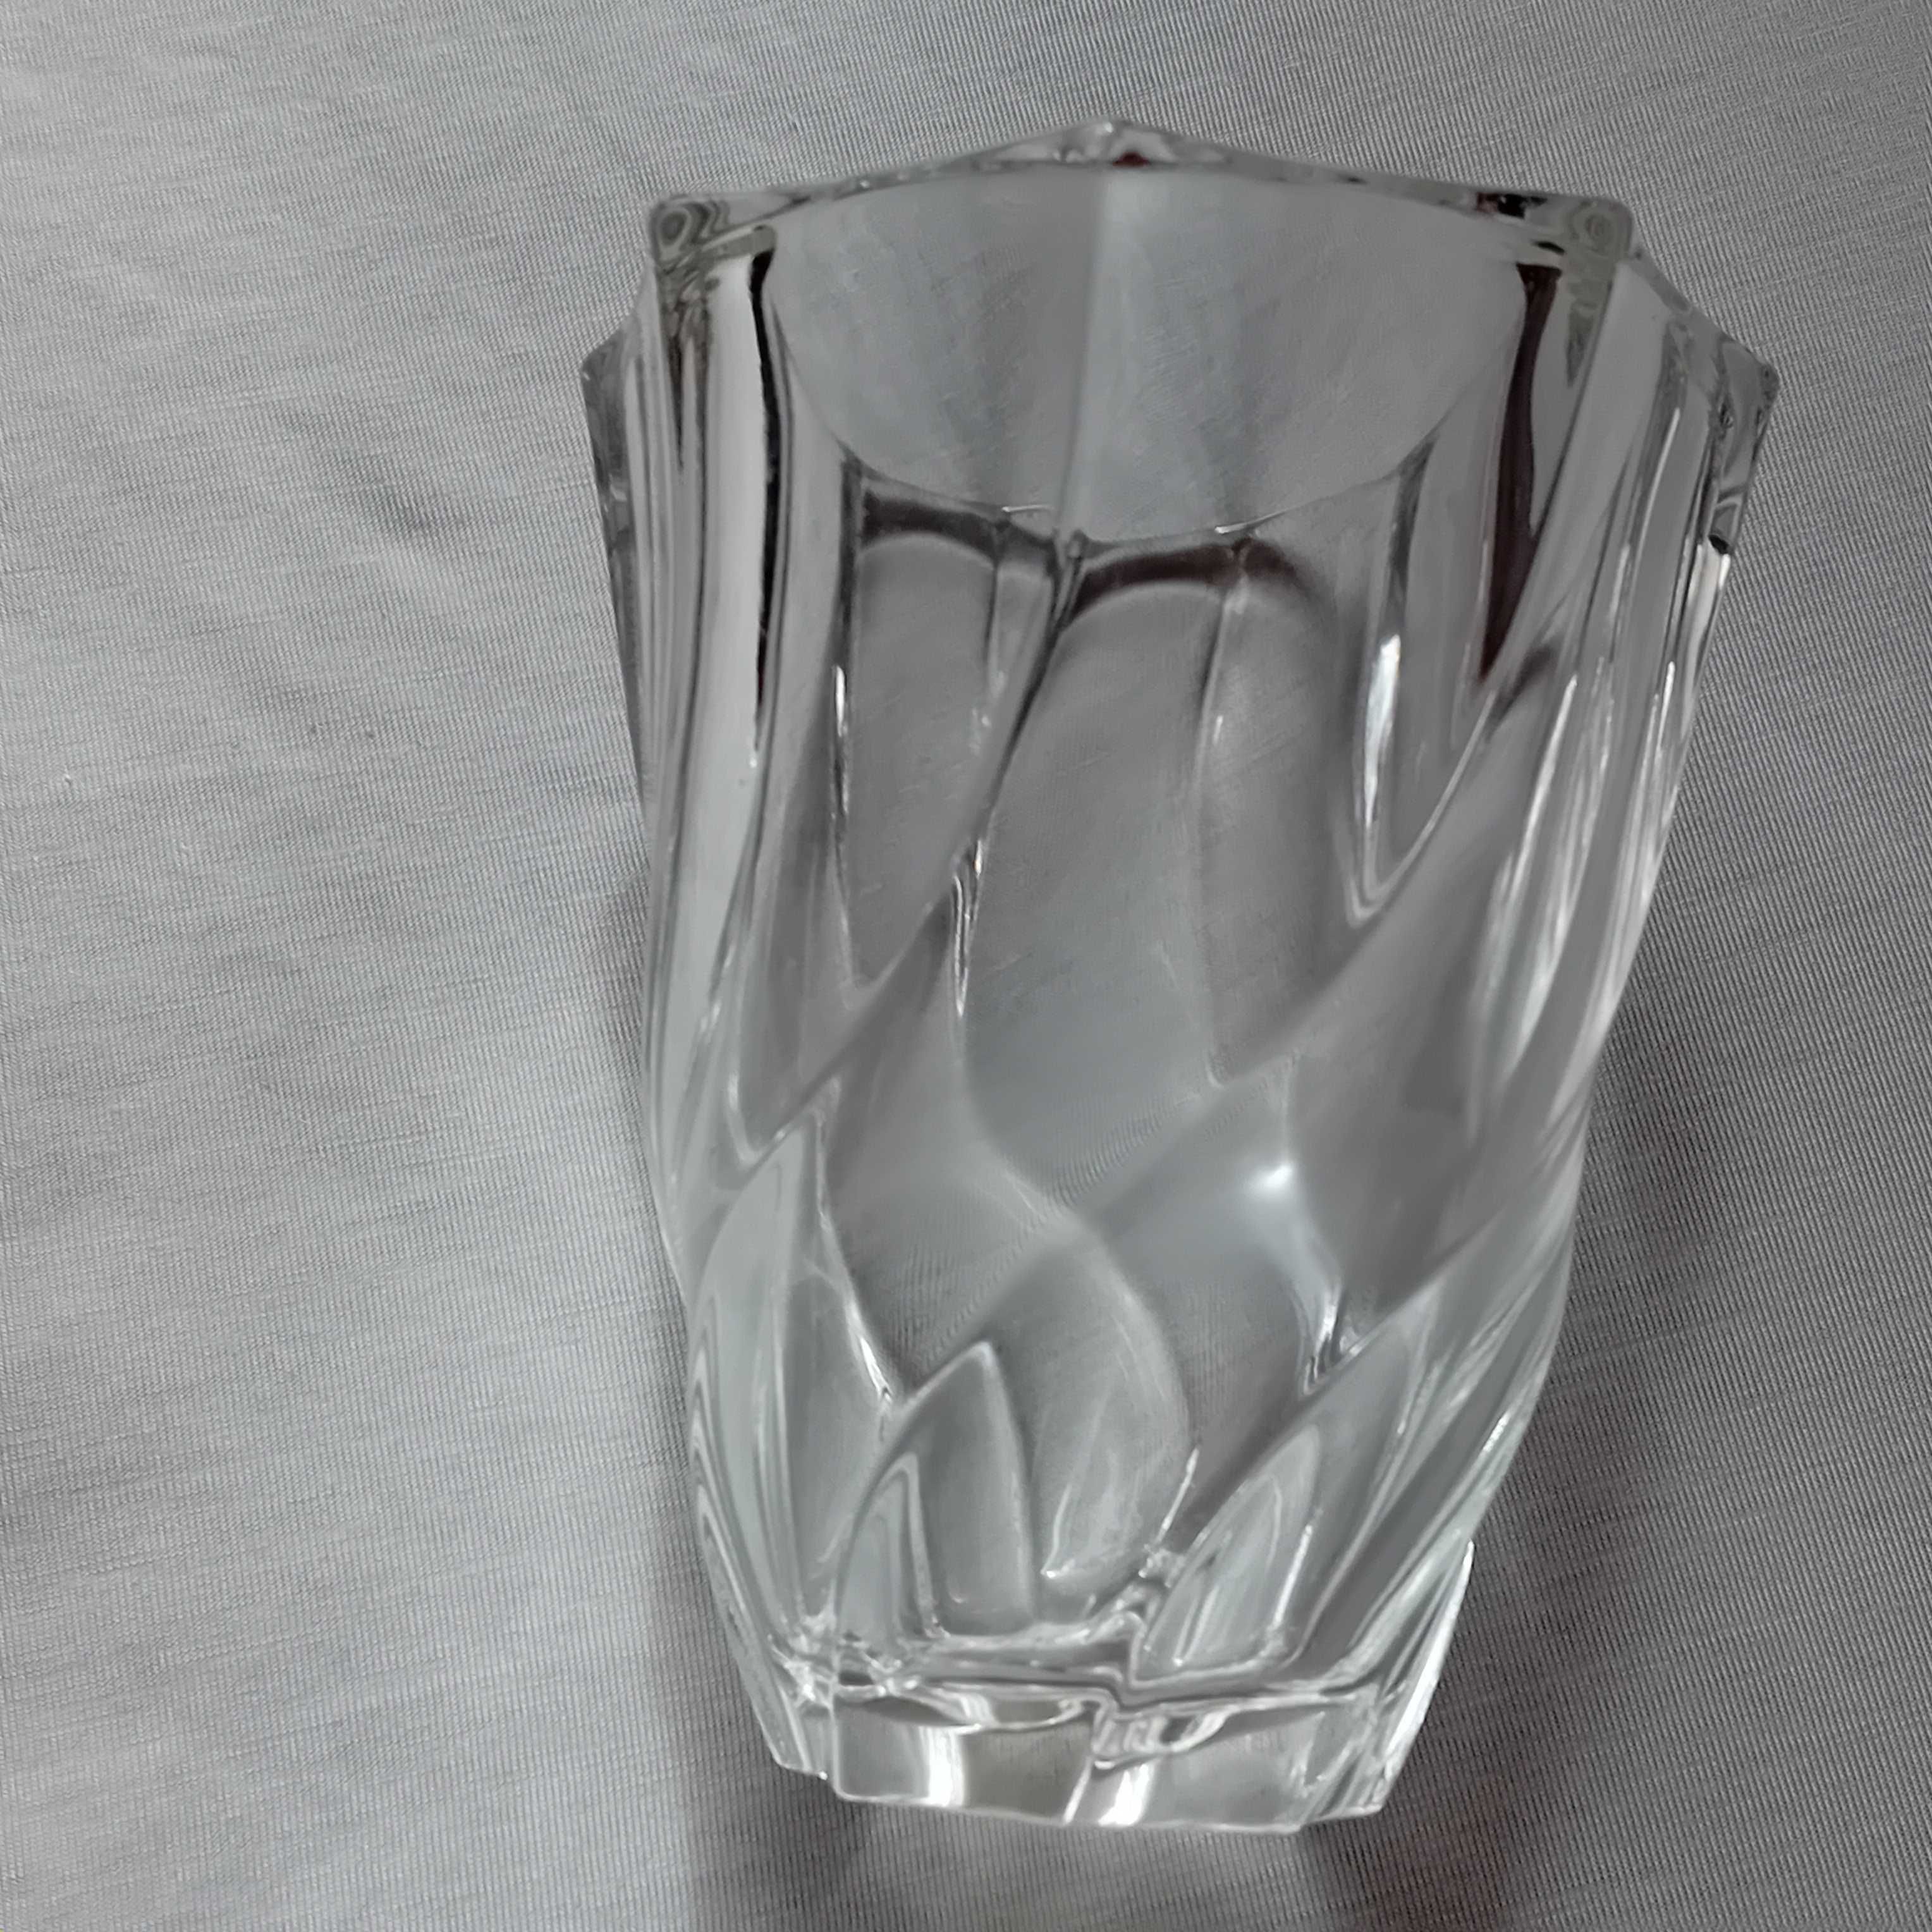 Spiralny wazon kryształowy Luminarc, z lat 70-ych.